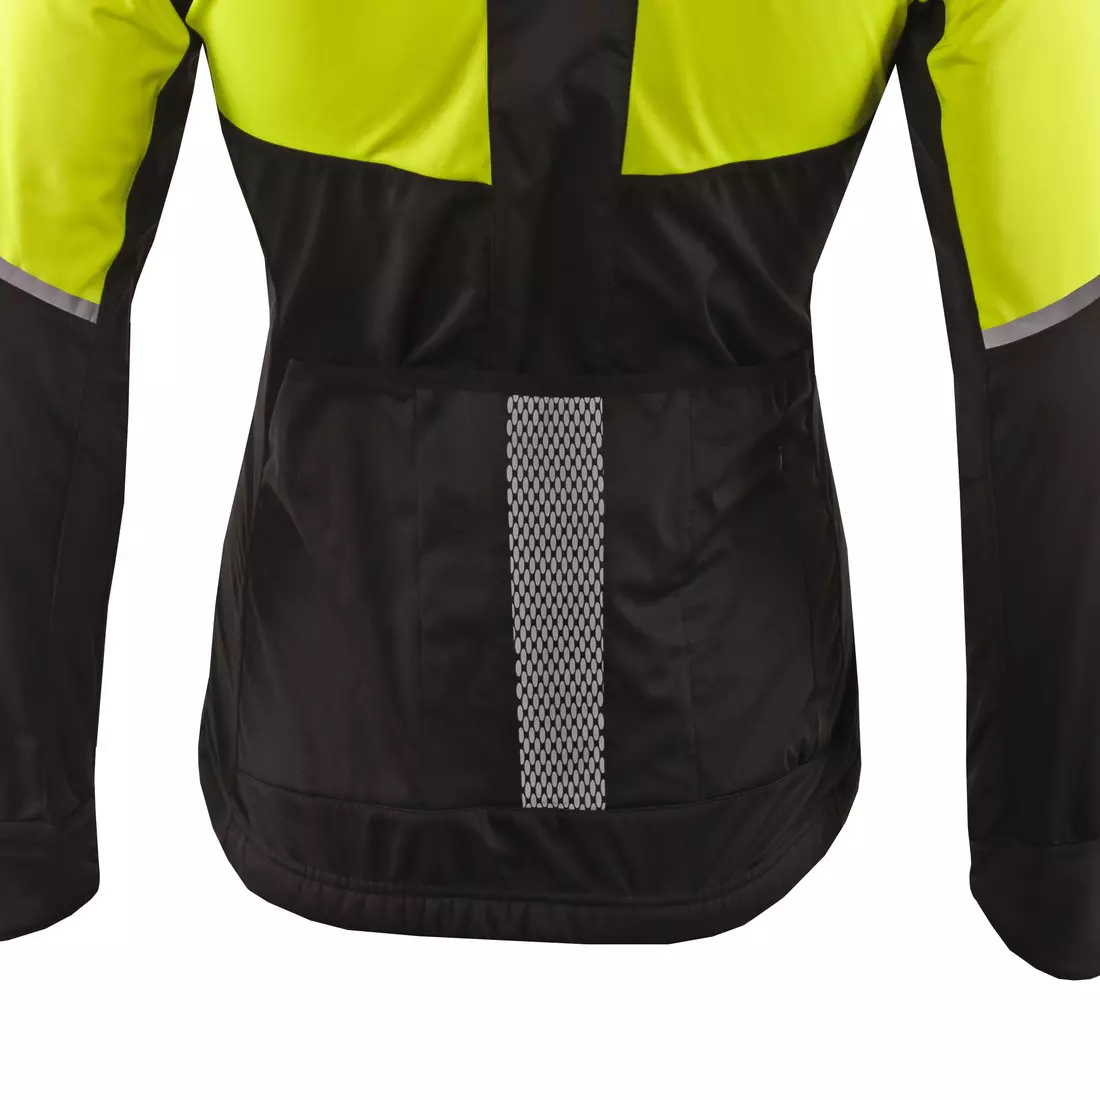 KAYMAQ JWS-004 férfi téli kerékpáros kabát softshell fluo sárga-fekete